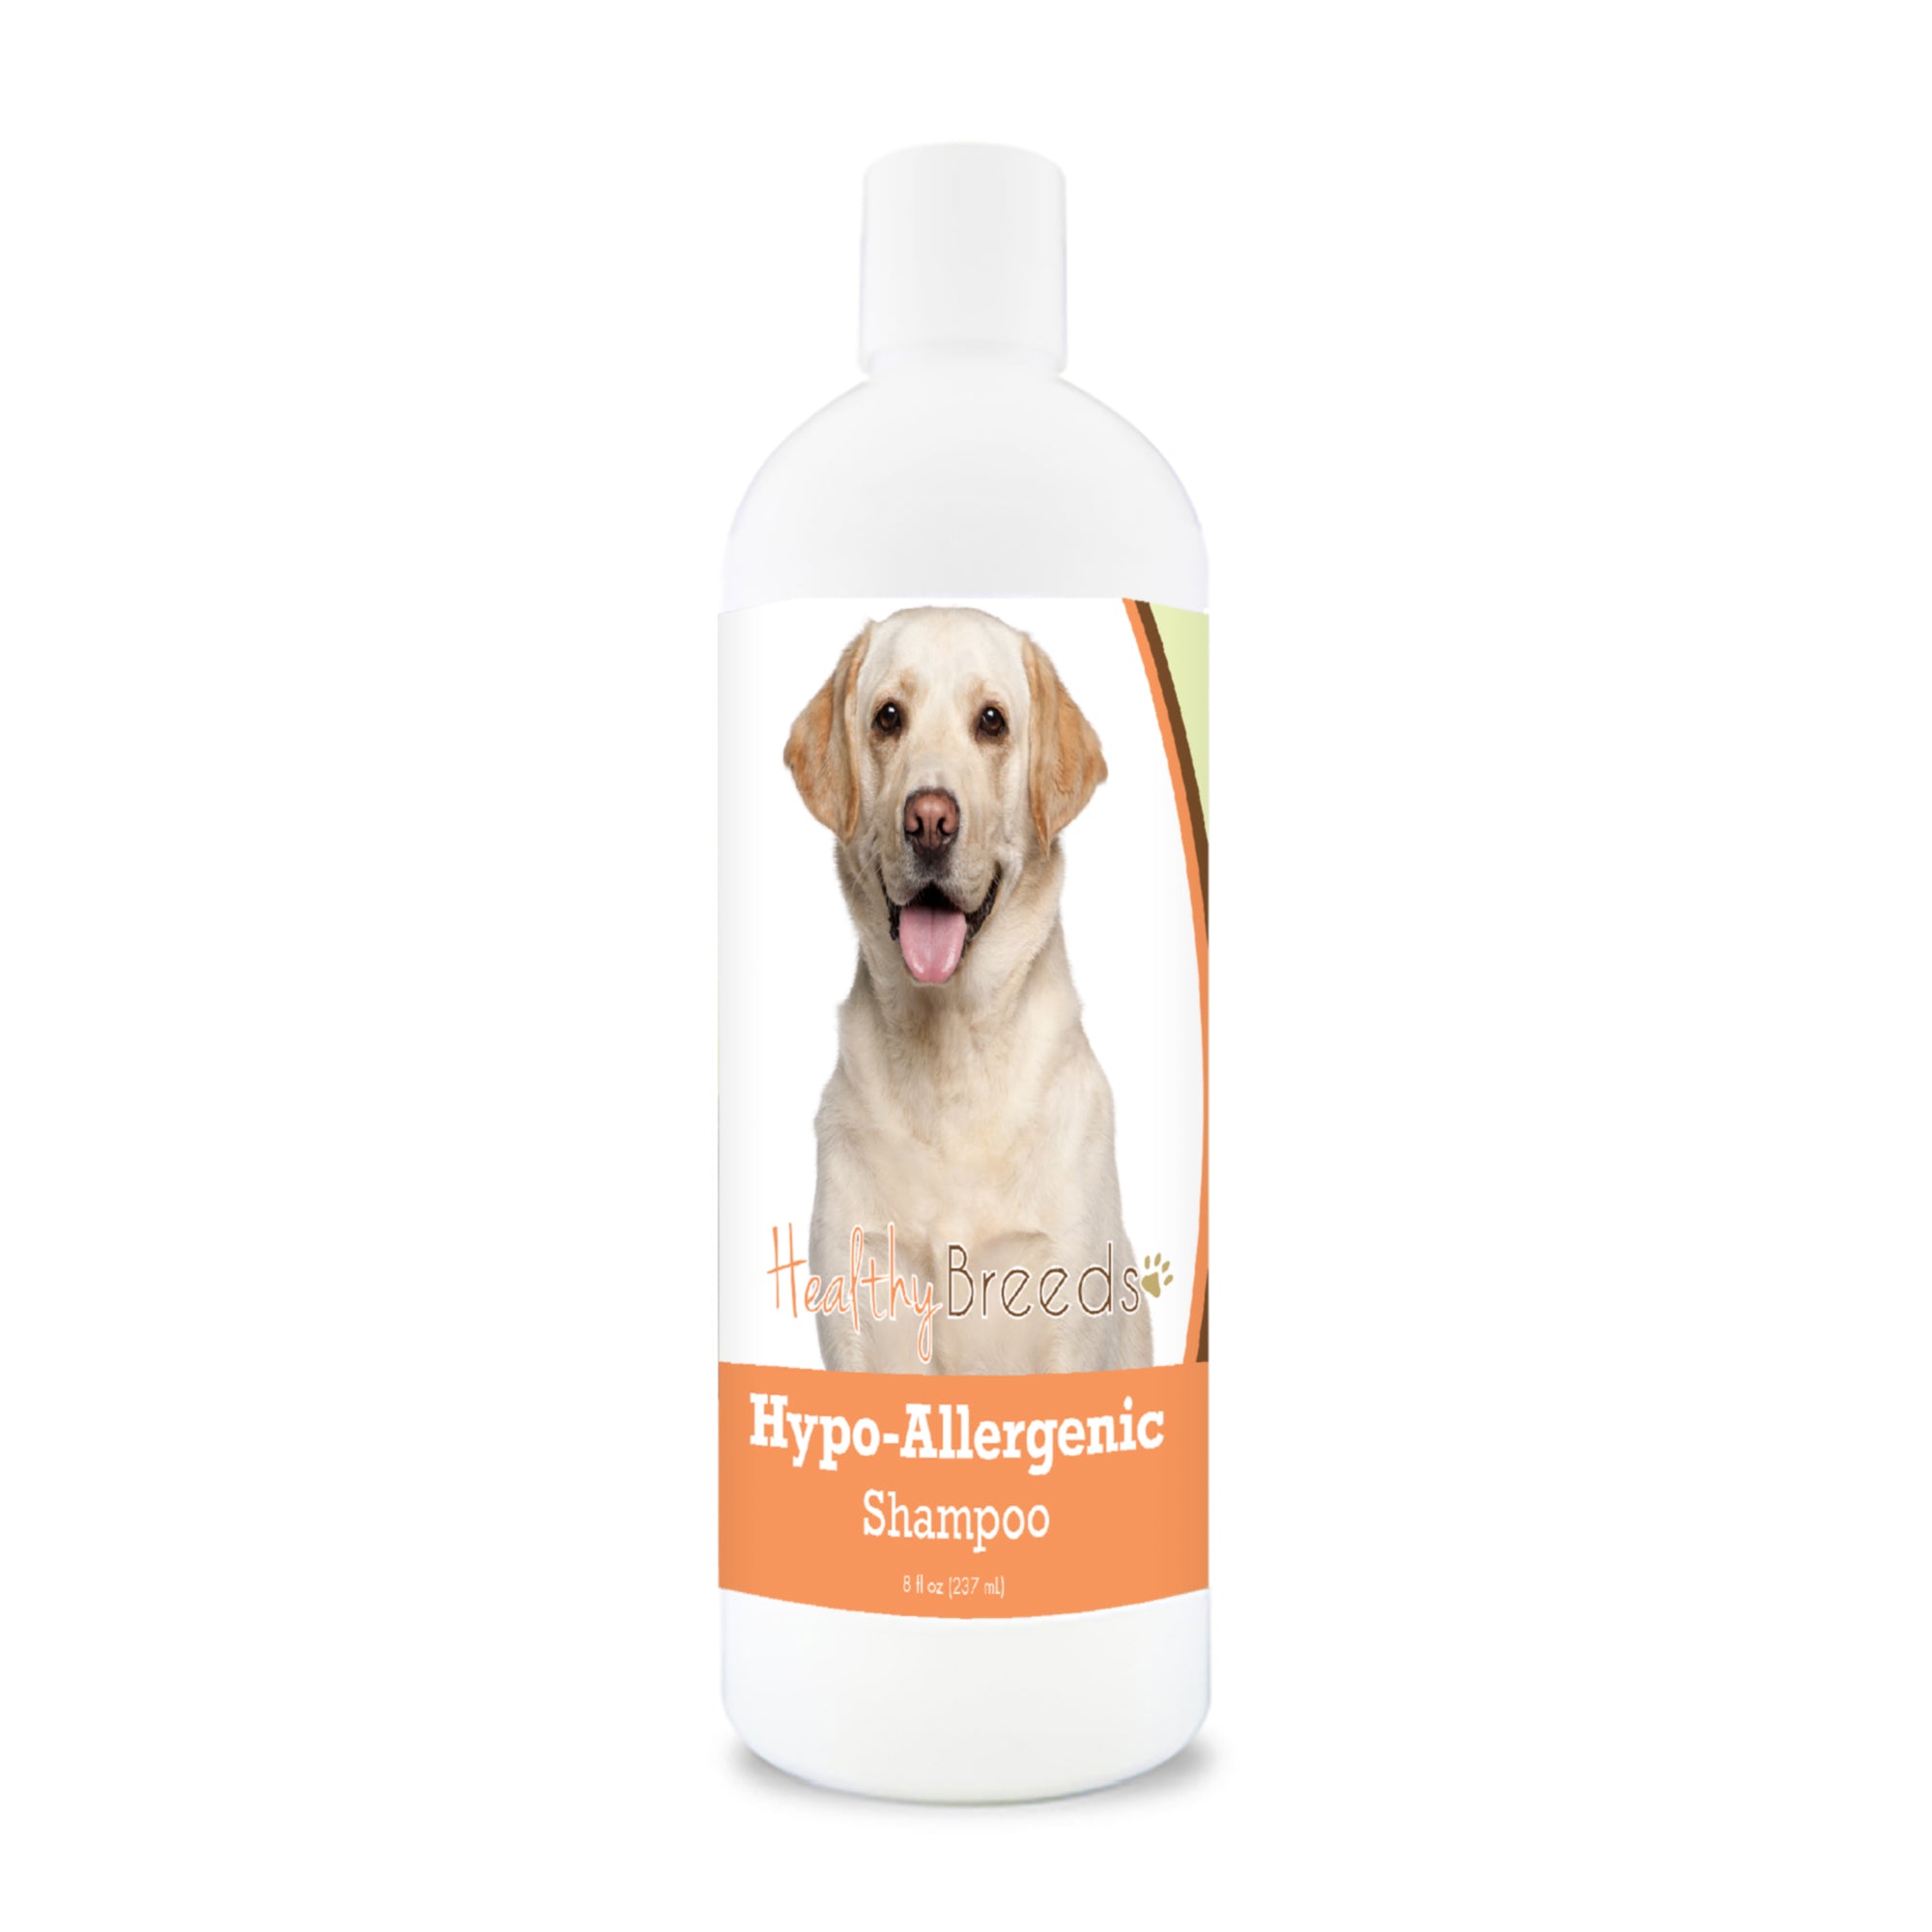 Labrador Retriever Hypo-Allergenic Shampoo 8 oz